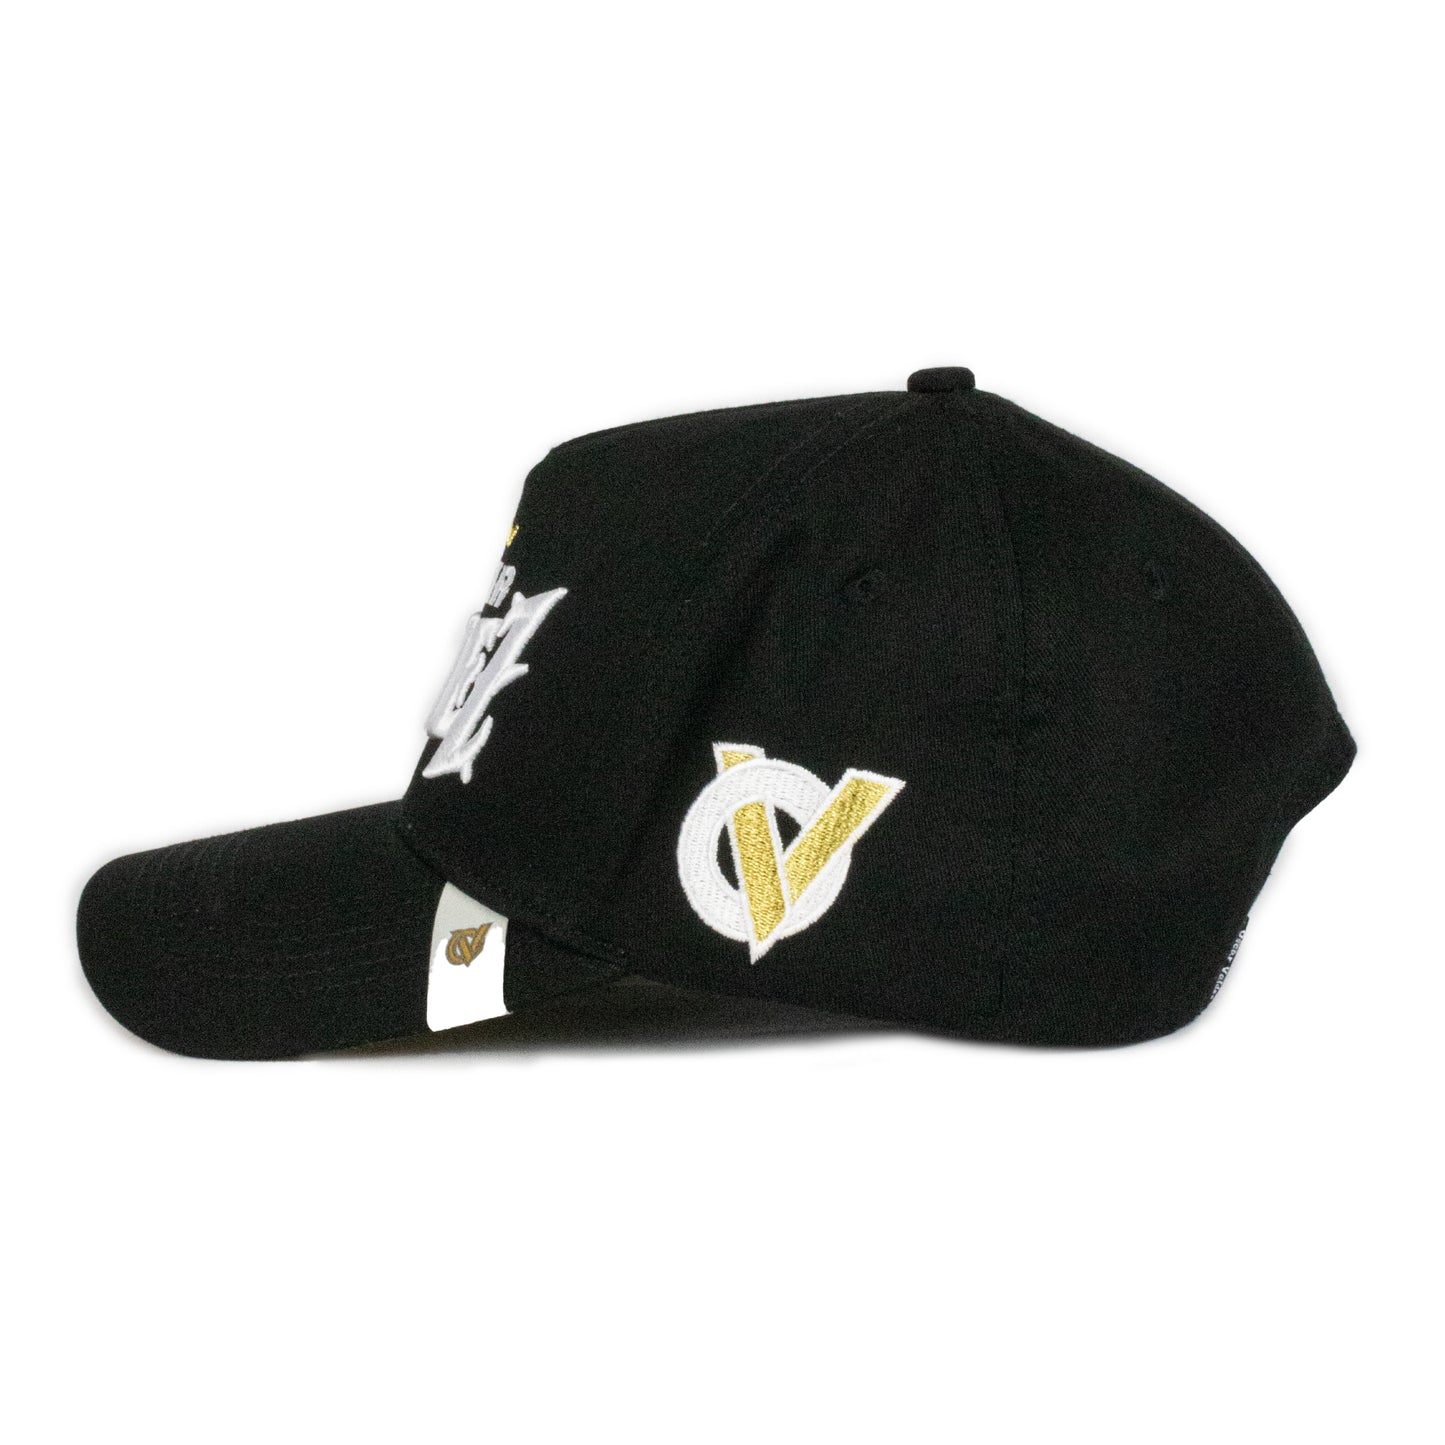 The Oscar Valdez Hat